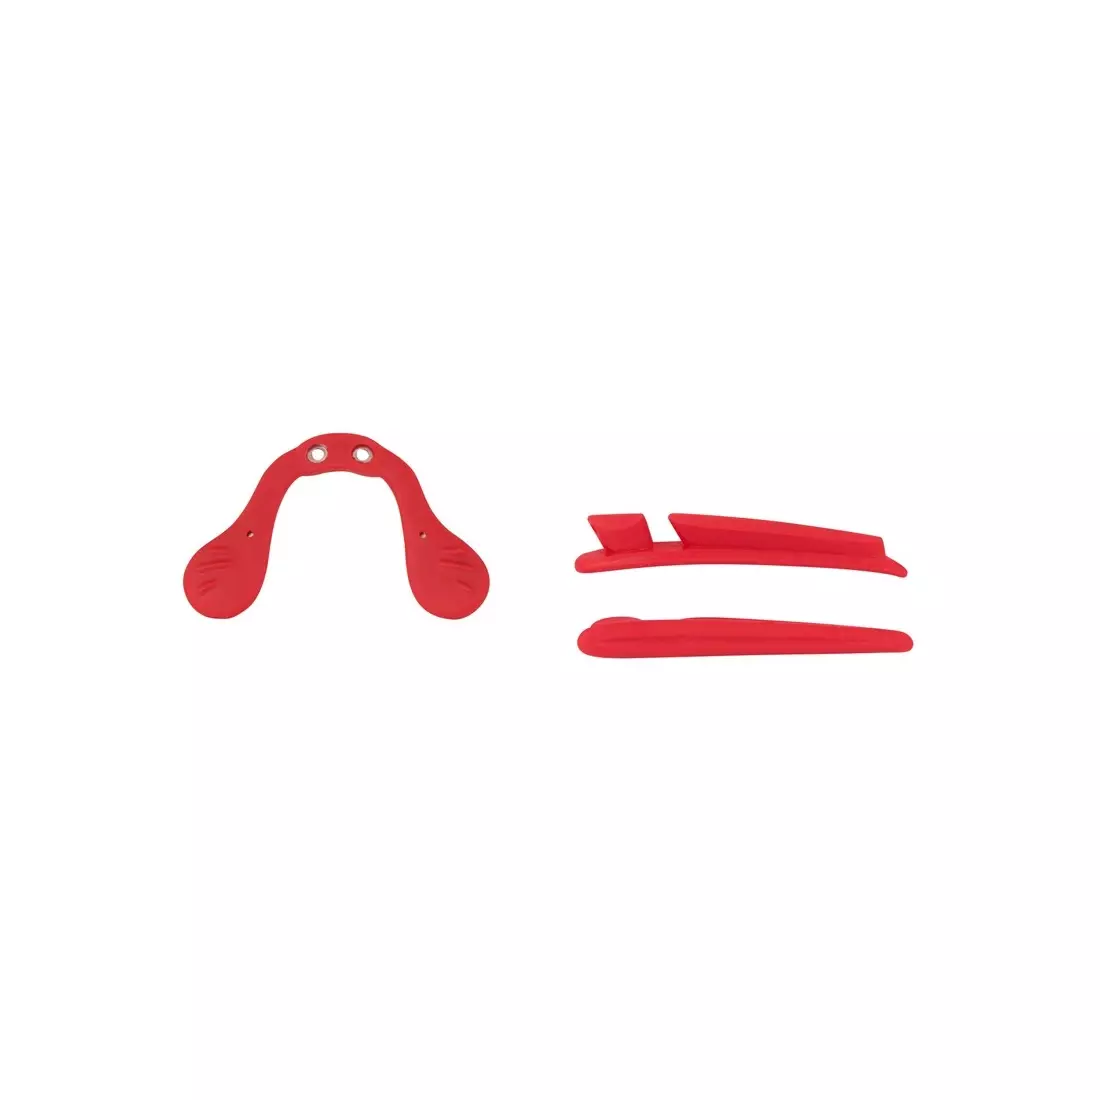 FORCE RON Cyklistické/športové okuliare biele a červené 91011 vymeniteľné sklá